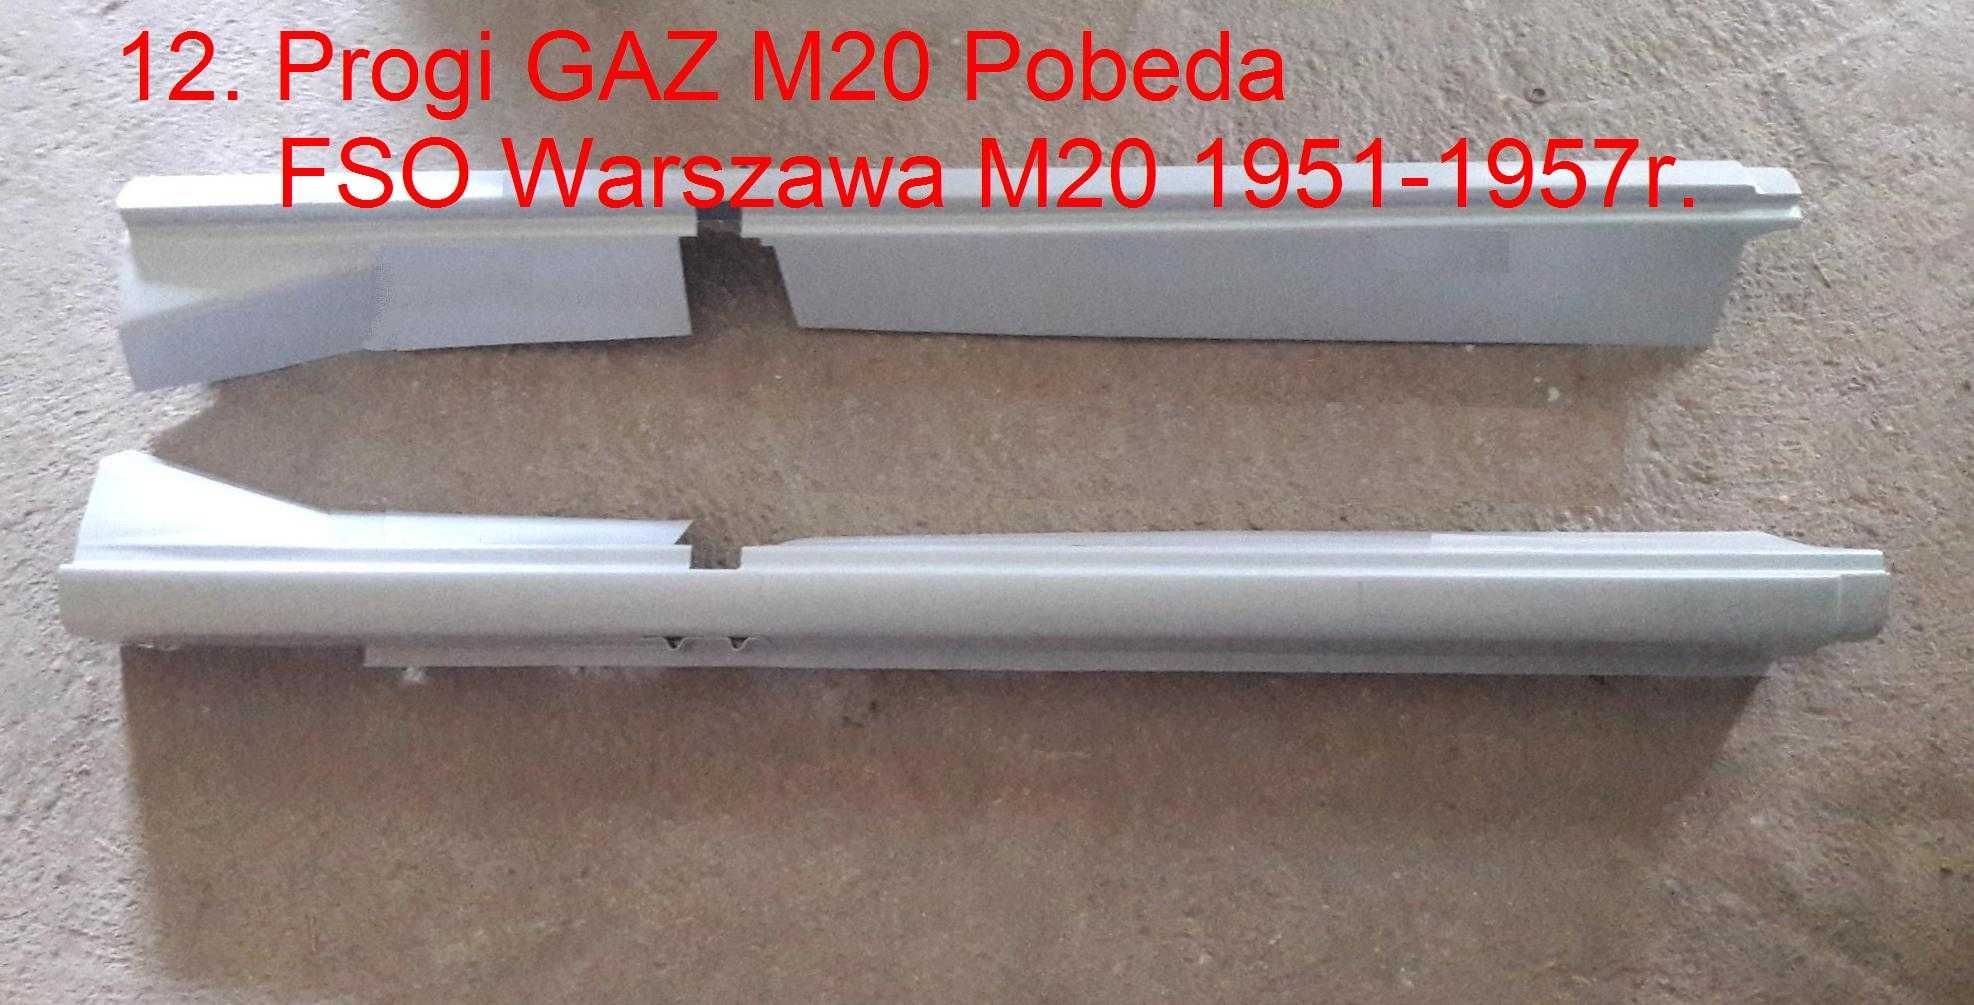 FSO Warszawa Pick Up 223 M20 Pobieda części progi podłoga zestaw blach